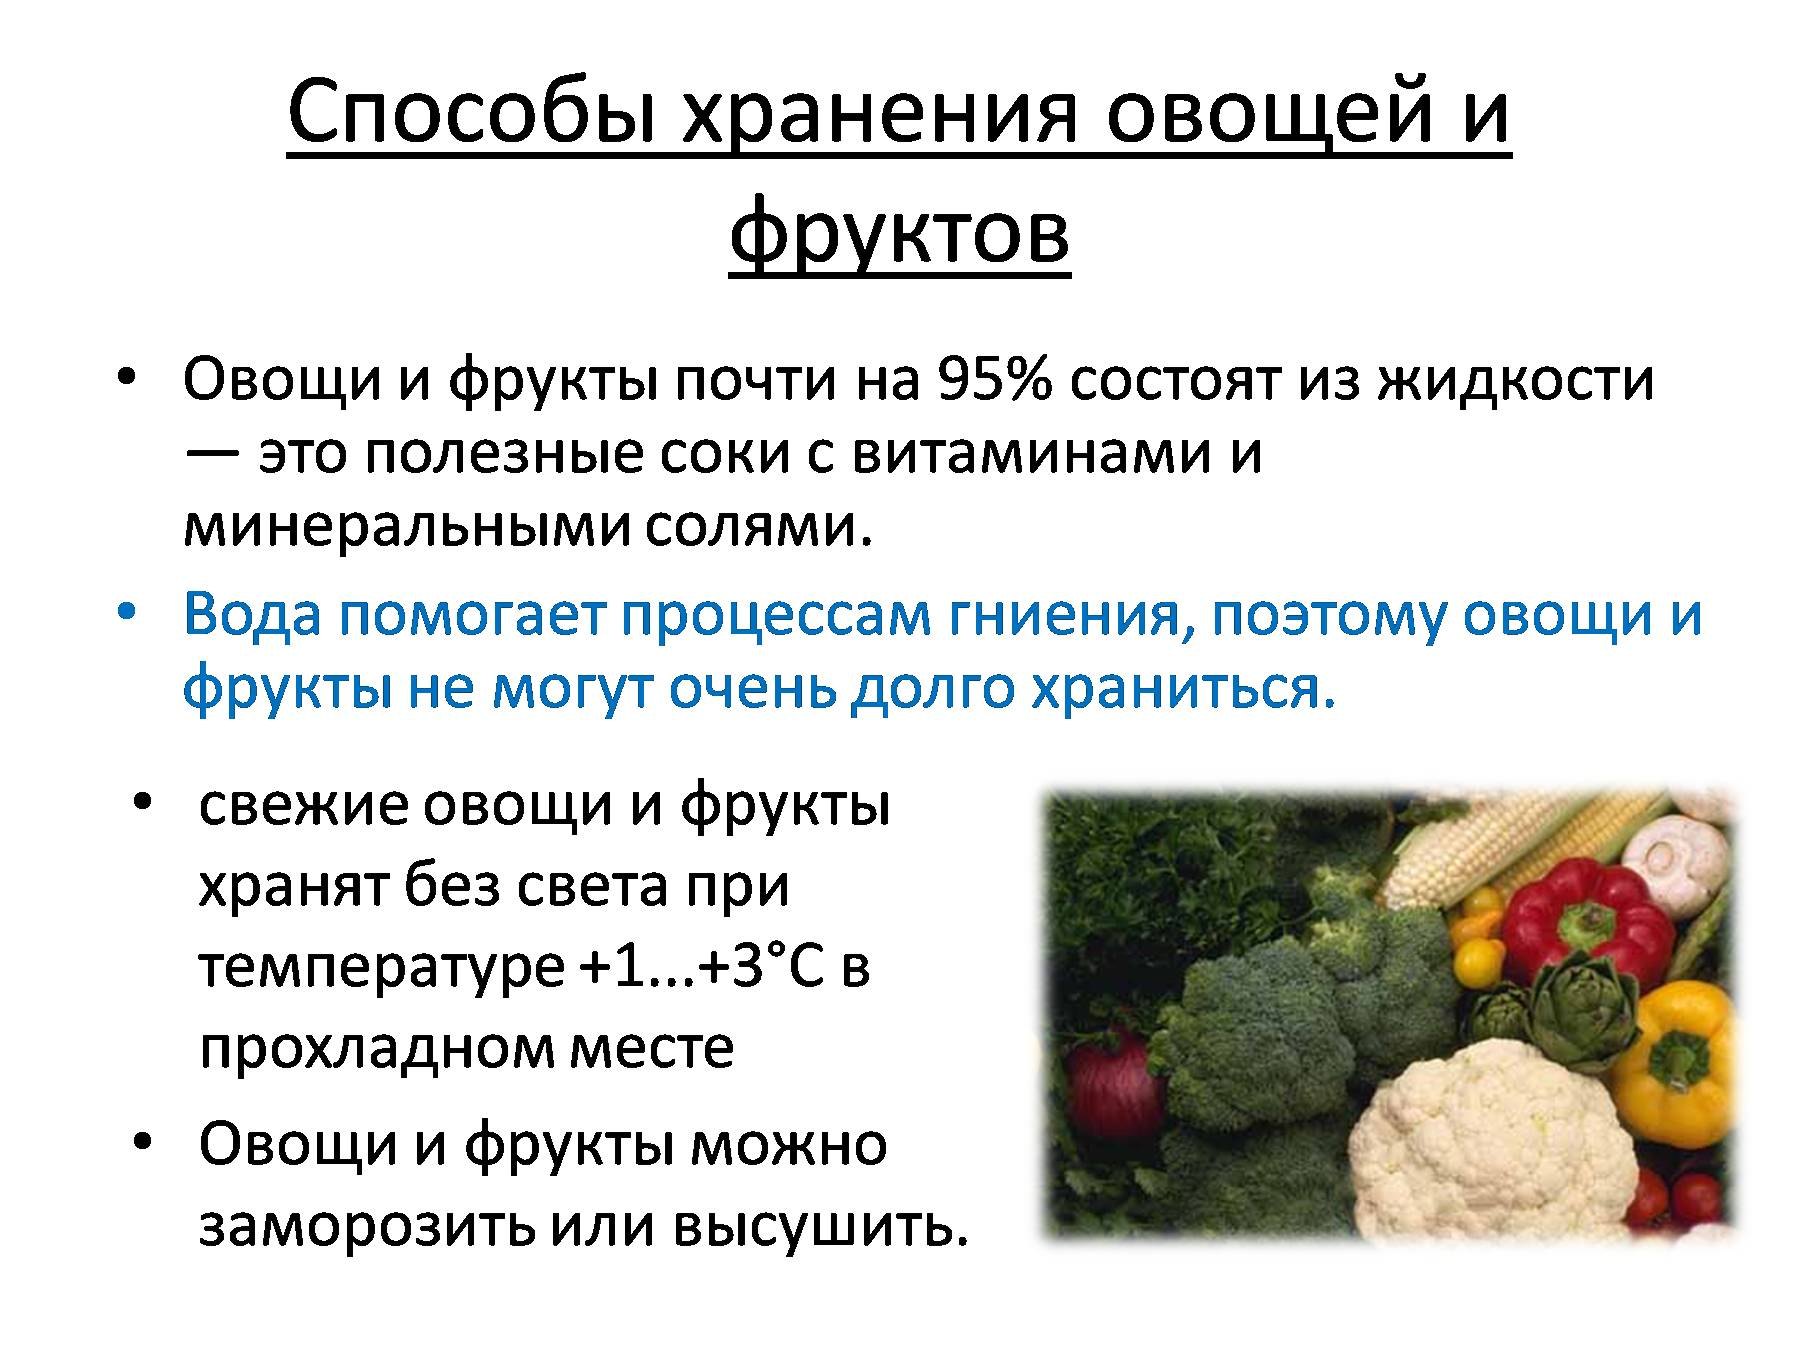 Требования к качеству хранения овощей. Способы хранения овощей. Методы сохранения овощей и плодов. Способы хранения овощей и фрукто. Условия хранения плодов и овощей.